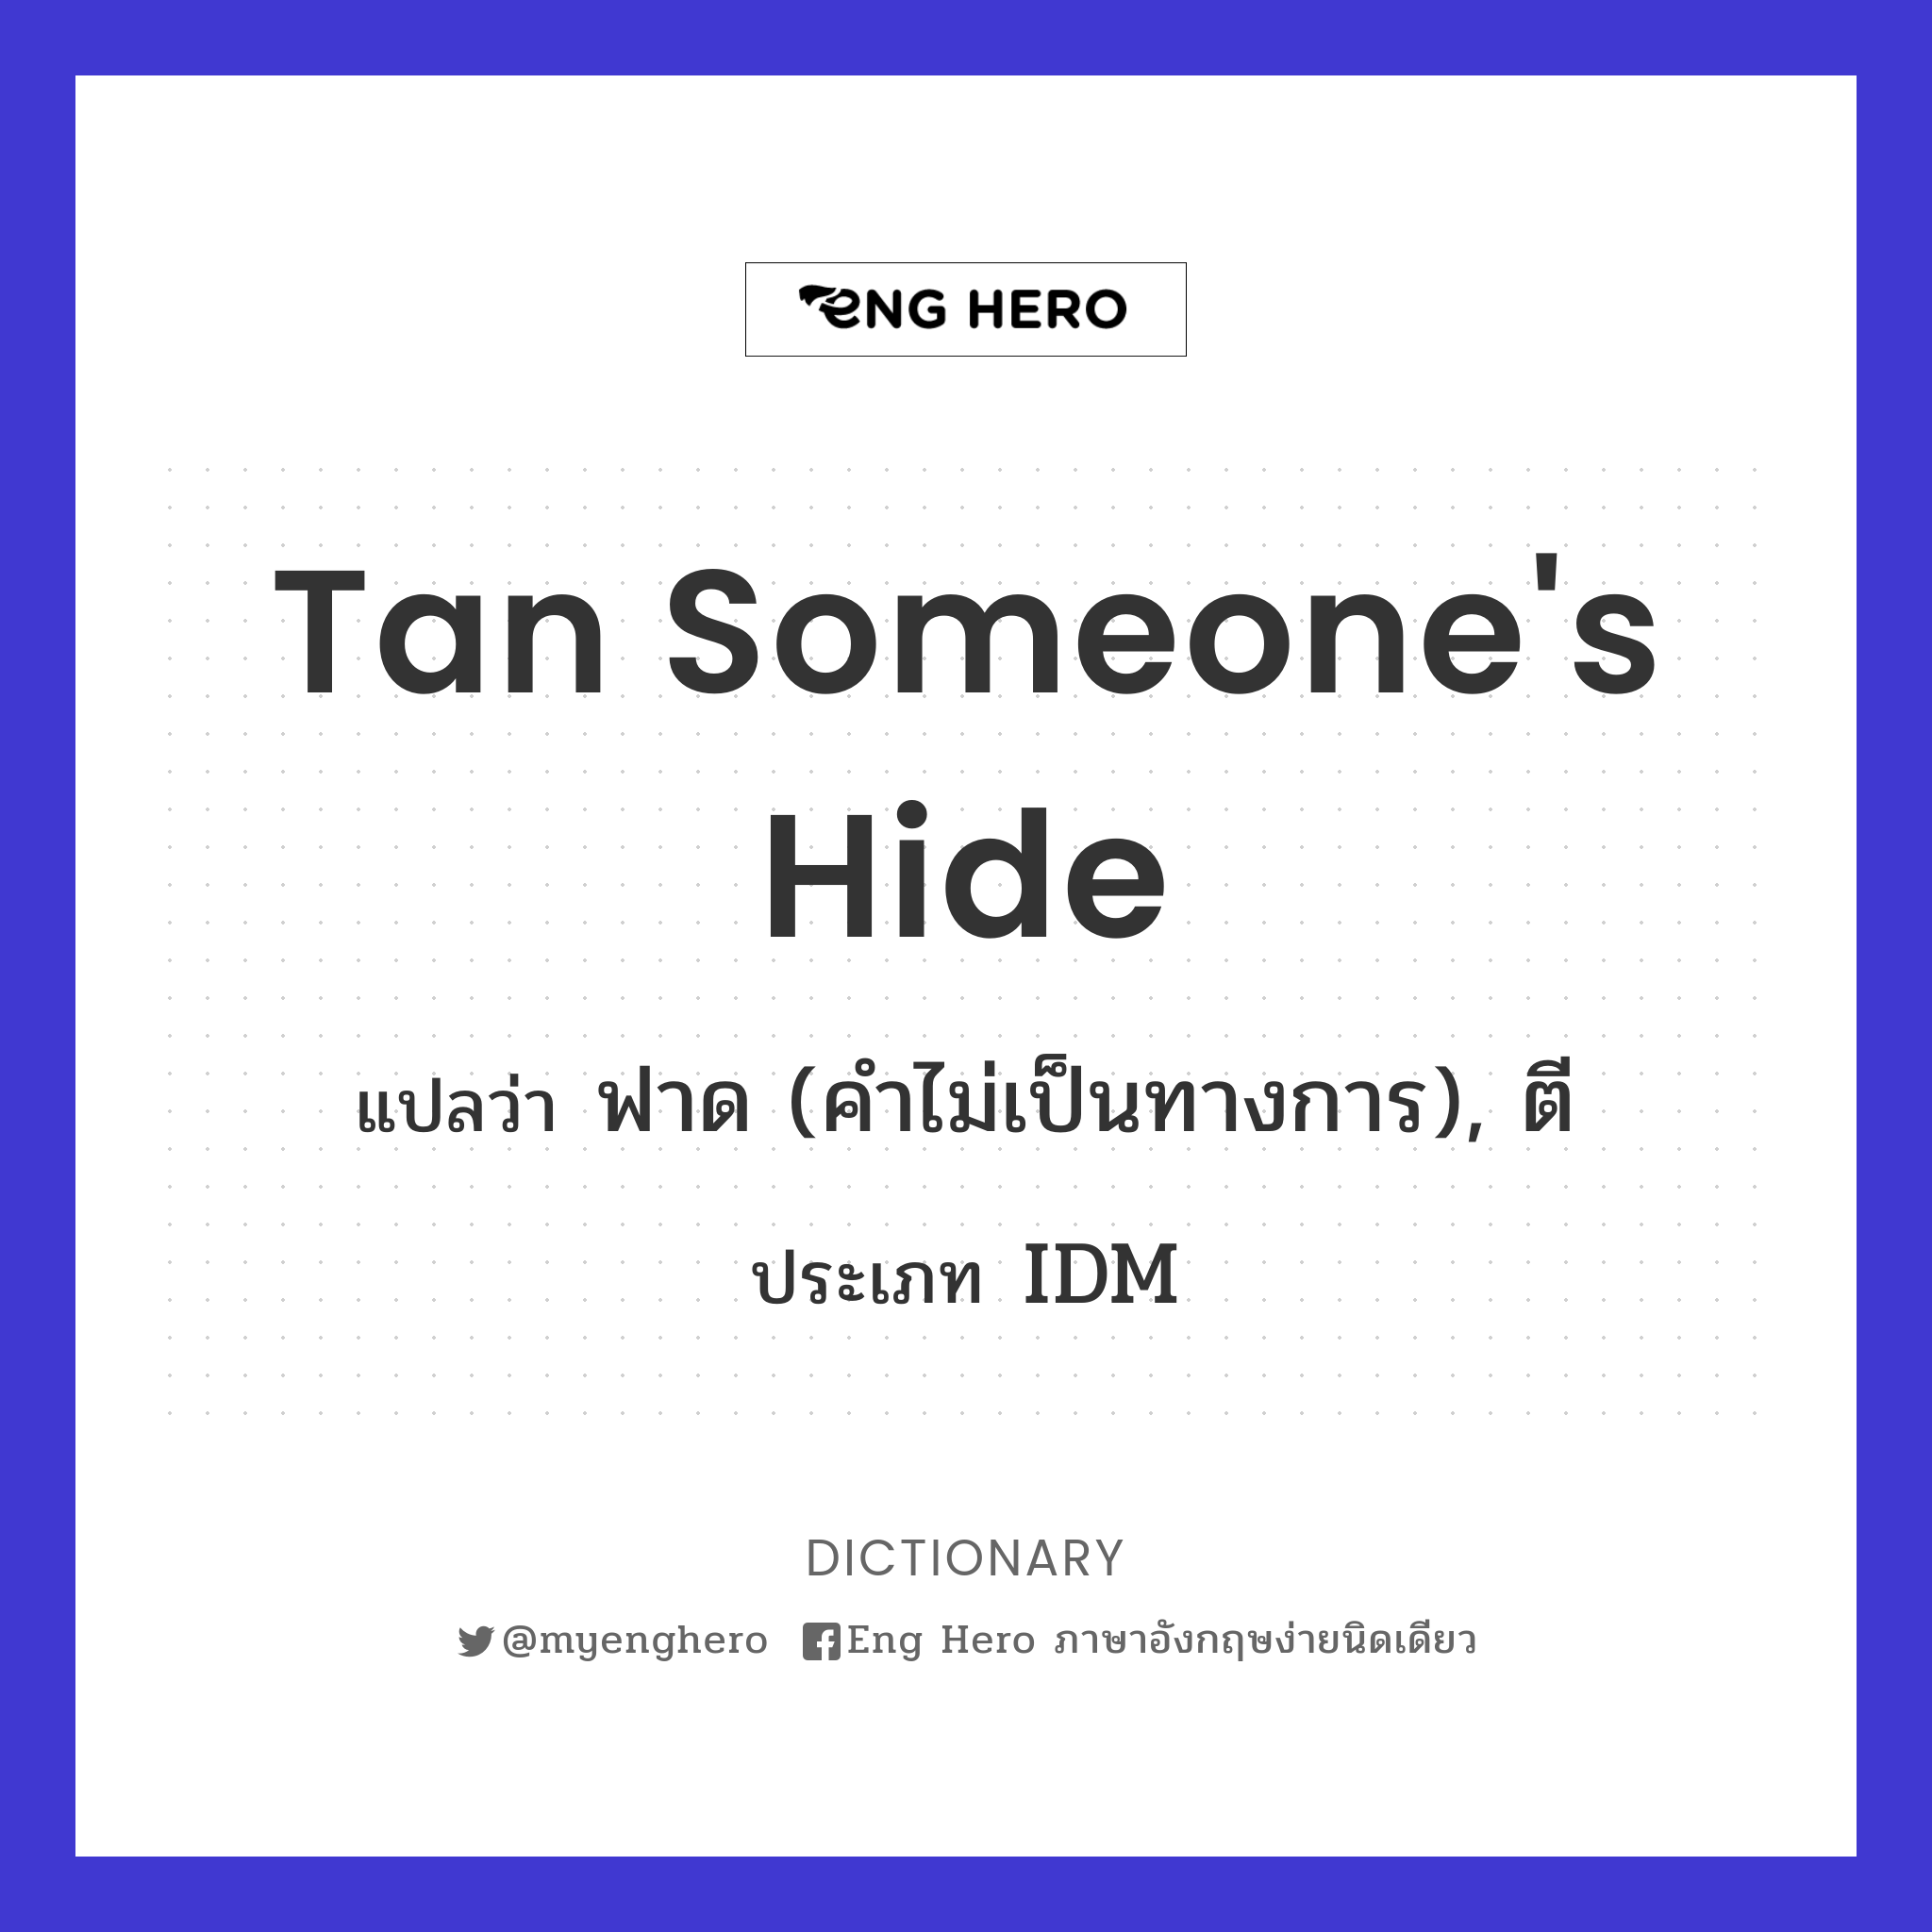 tan someone's hide